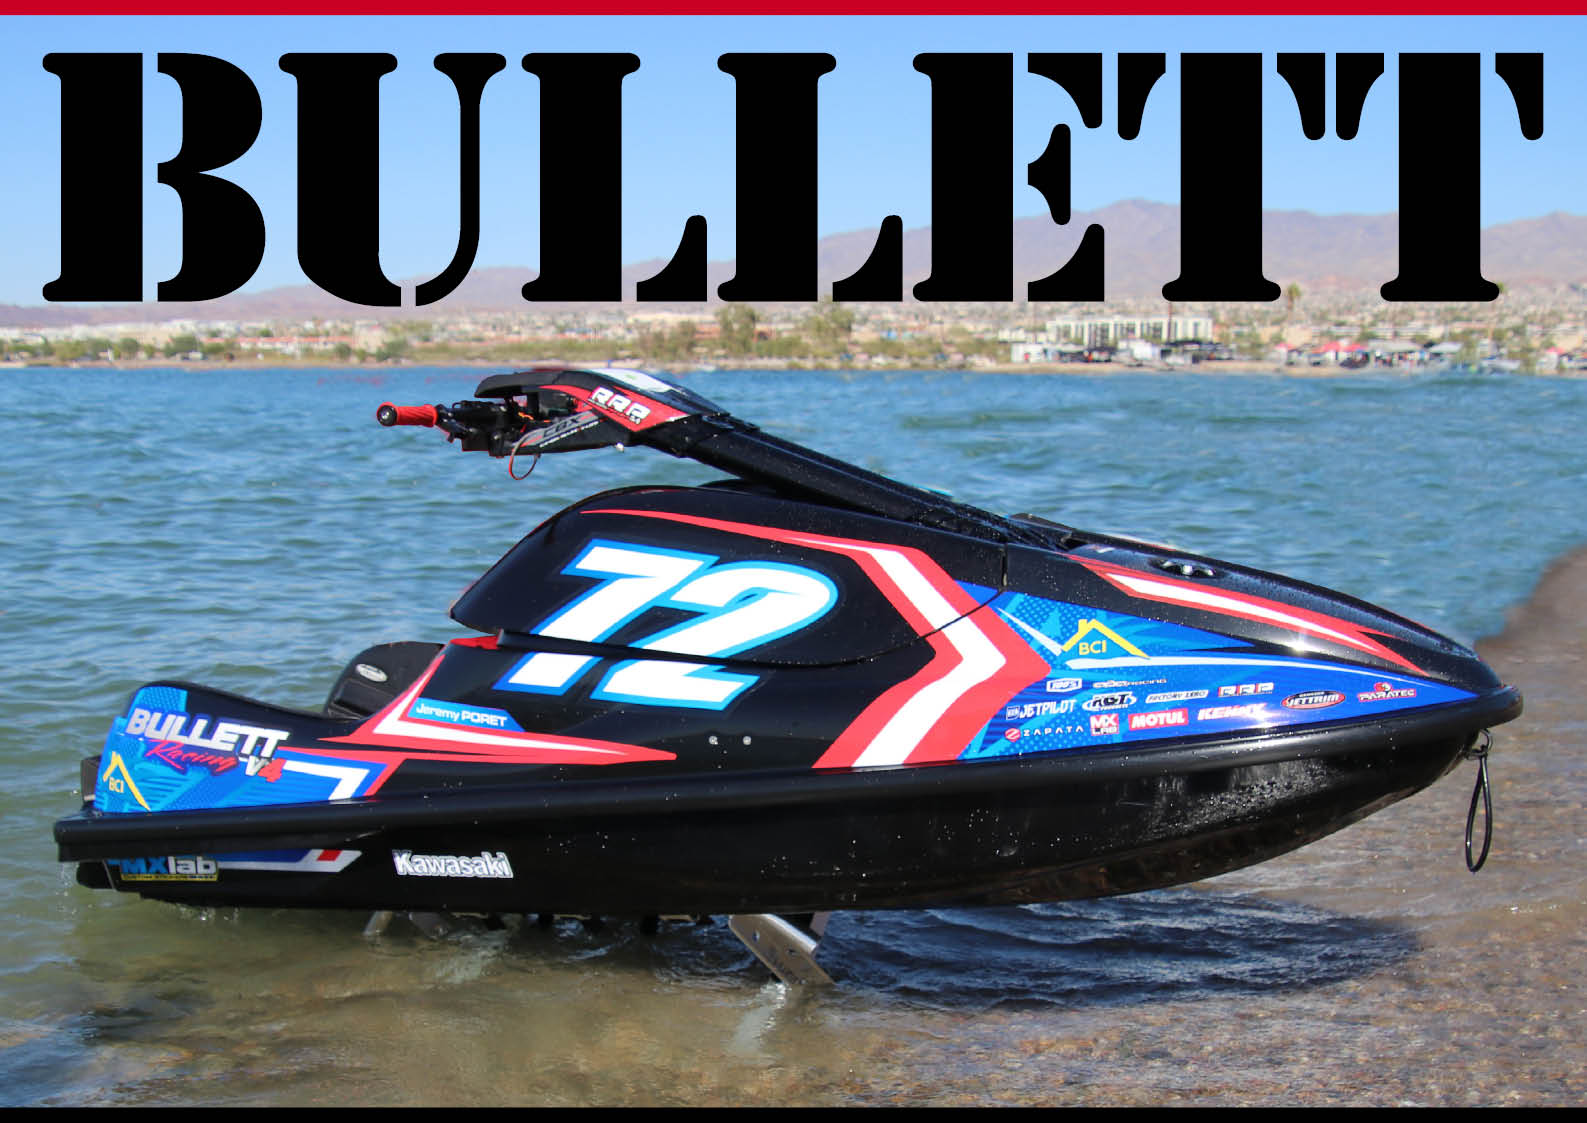 世界的 メジャー レースマシンブランド ブレットレーシング Bullett Racingとは ジェットスキー 水上バイク ワールドジェットスポーツマガジン